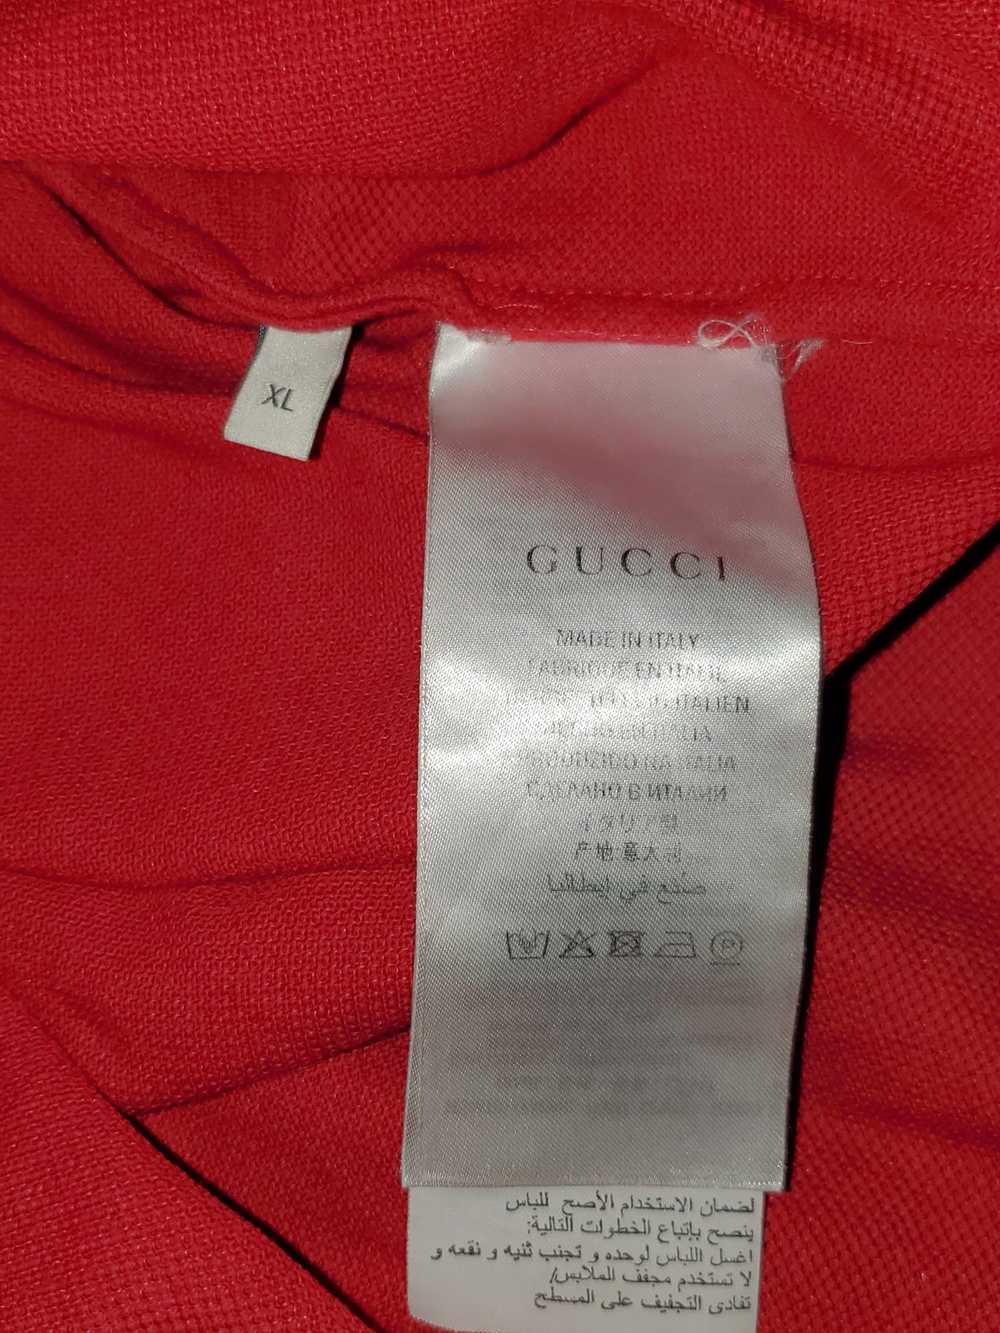 Gucci Gucci polo red size M - image 2